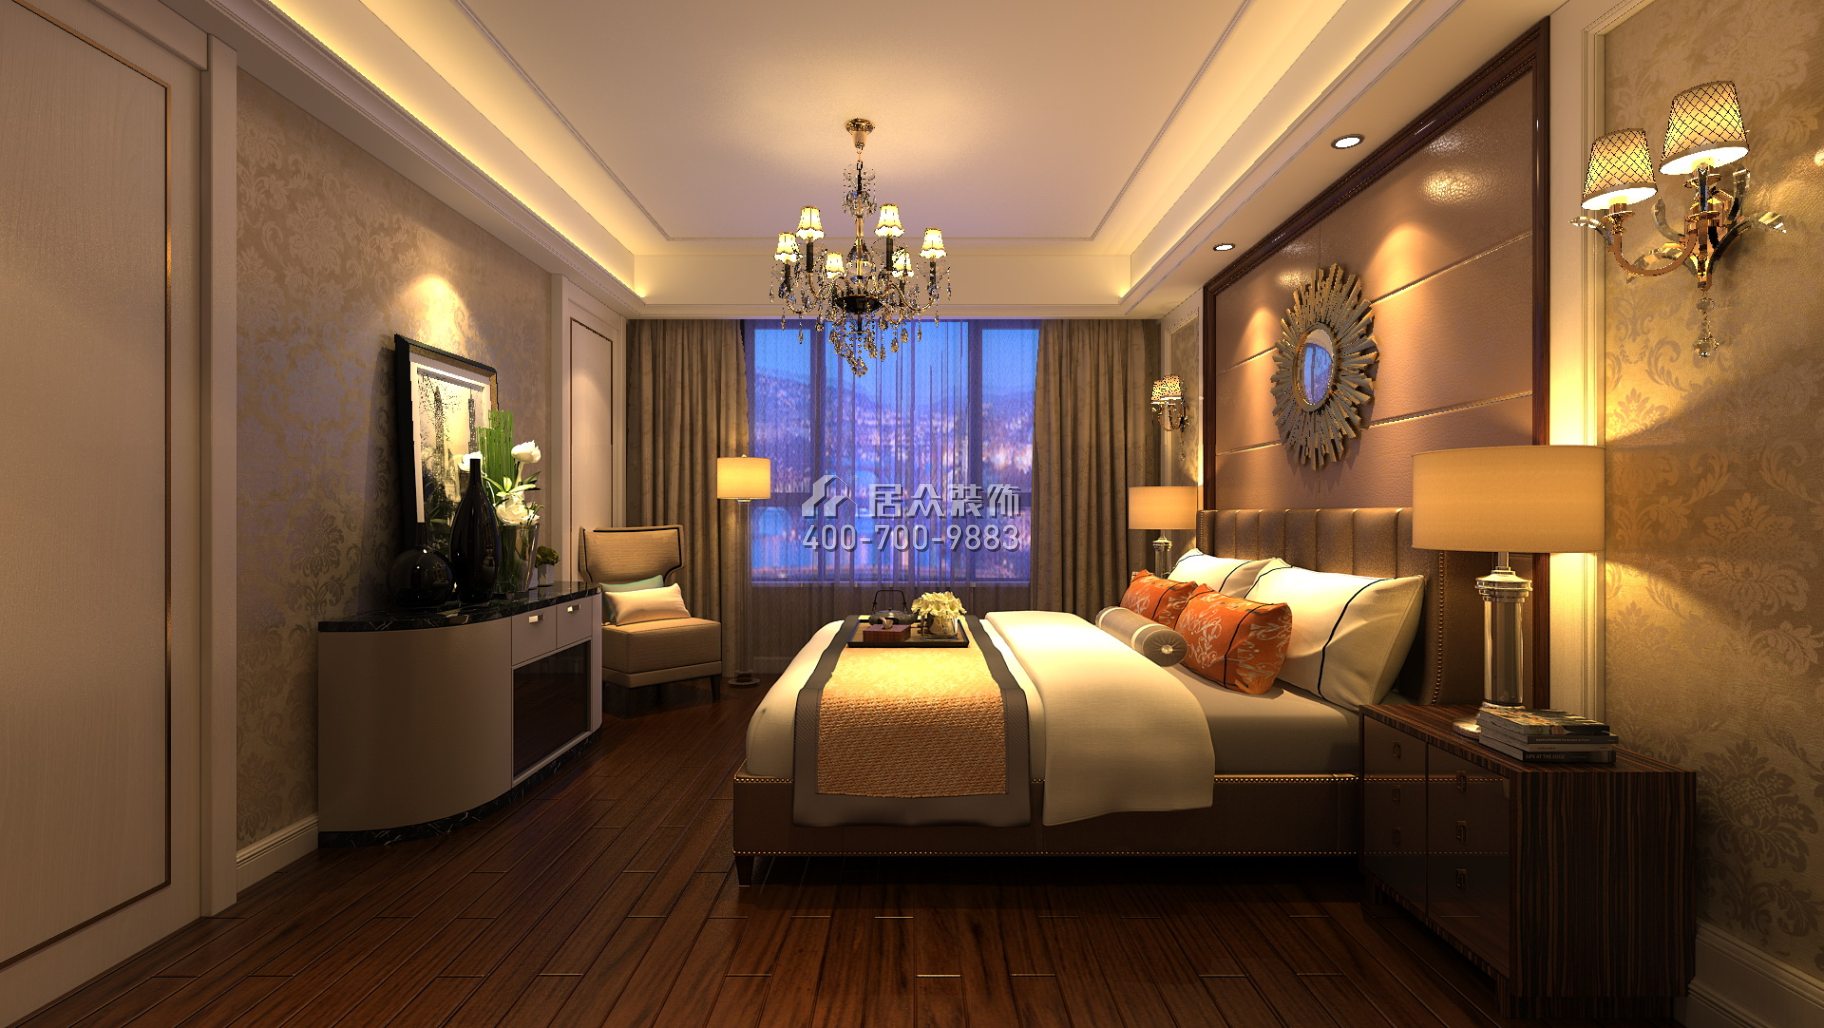 紫御华庭148平方米美式风格平层户型卧室装修效果图